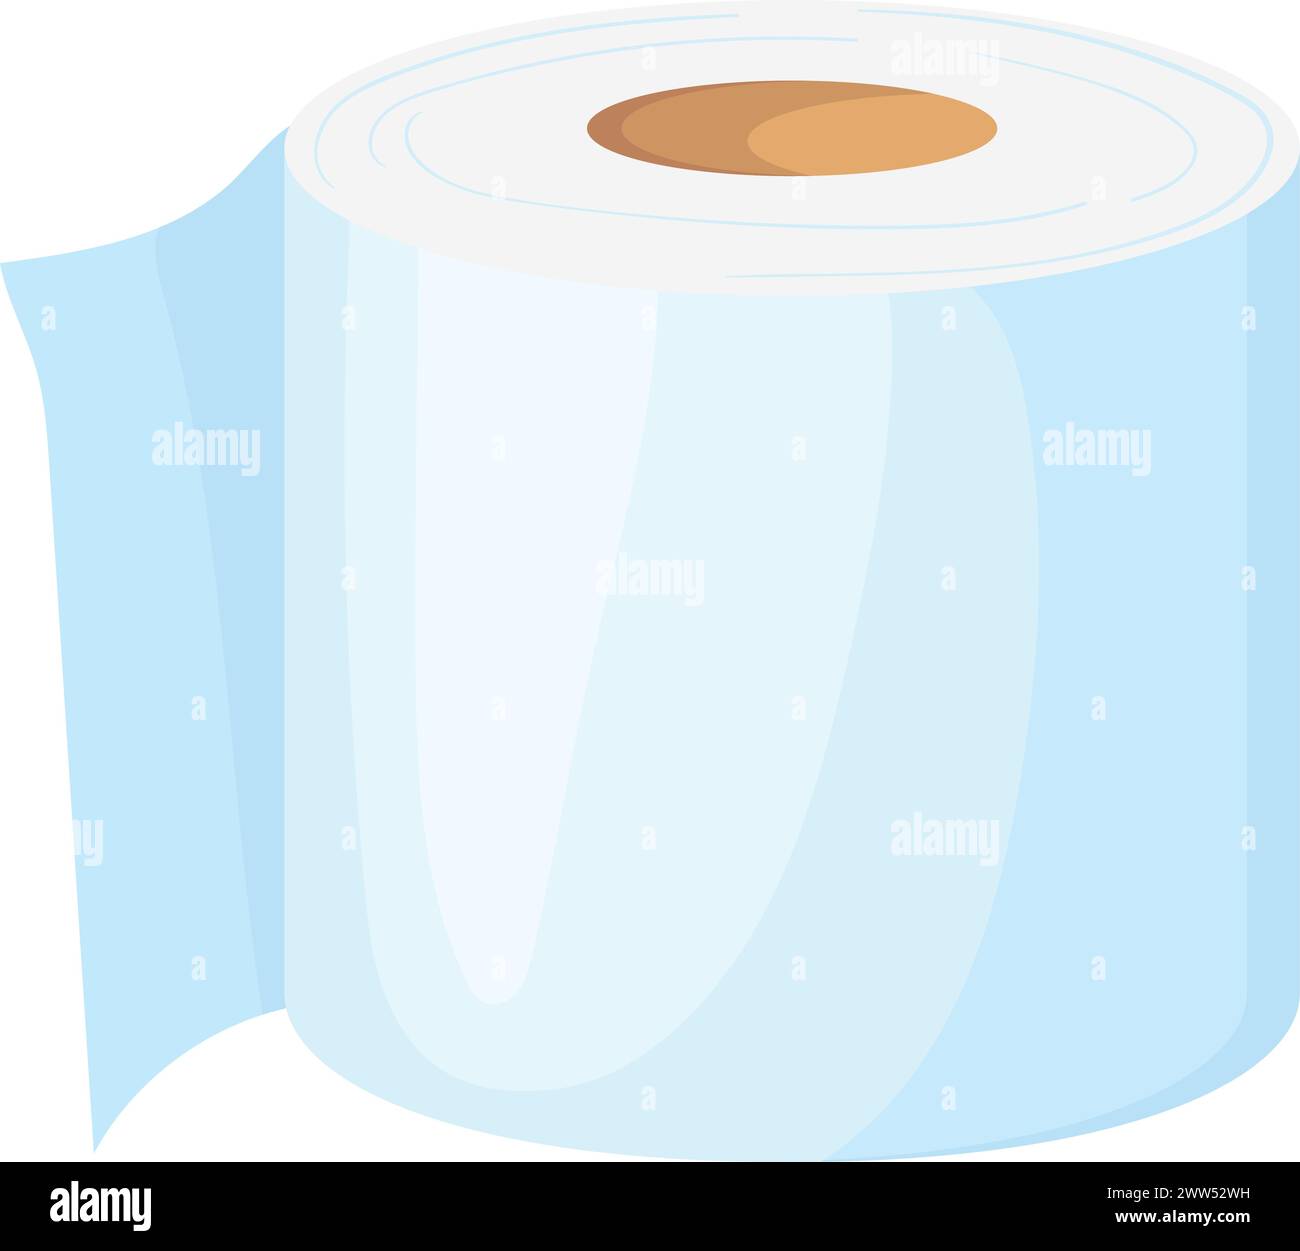 Nettoyez le rouleau d'essuie-tout. Papier toilette de dessin animé isolé sur fond blanc Illustration de Vecteur